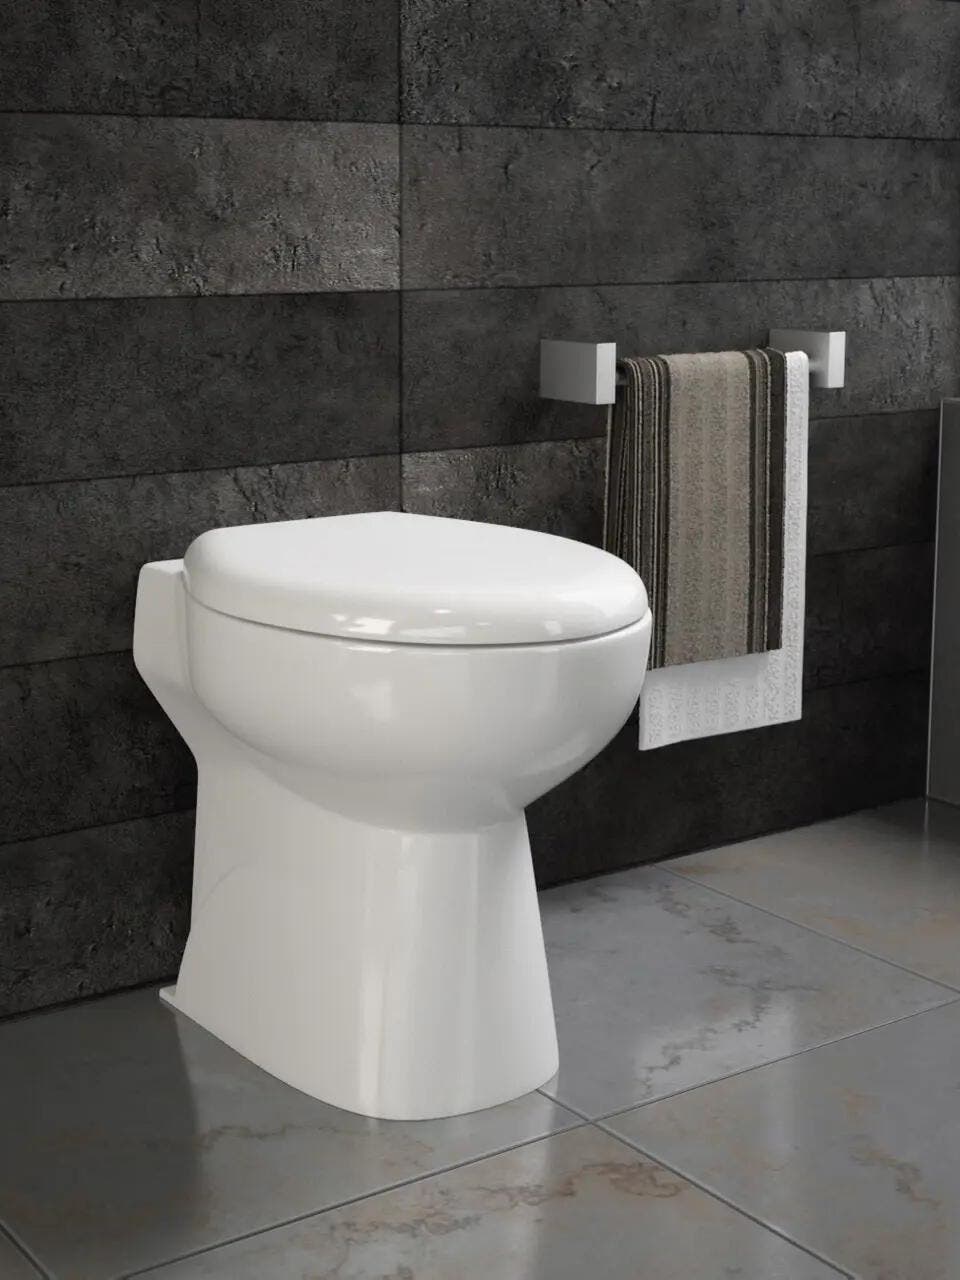 17 erreurs à éviter avec un WC sanibroyeur  Sanibroyeur, Wc broyeur,  Amenagement toilettes